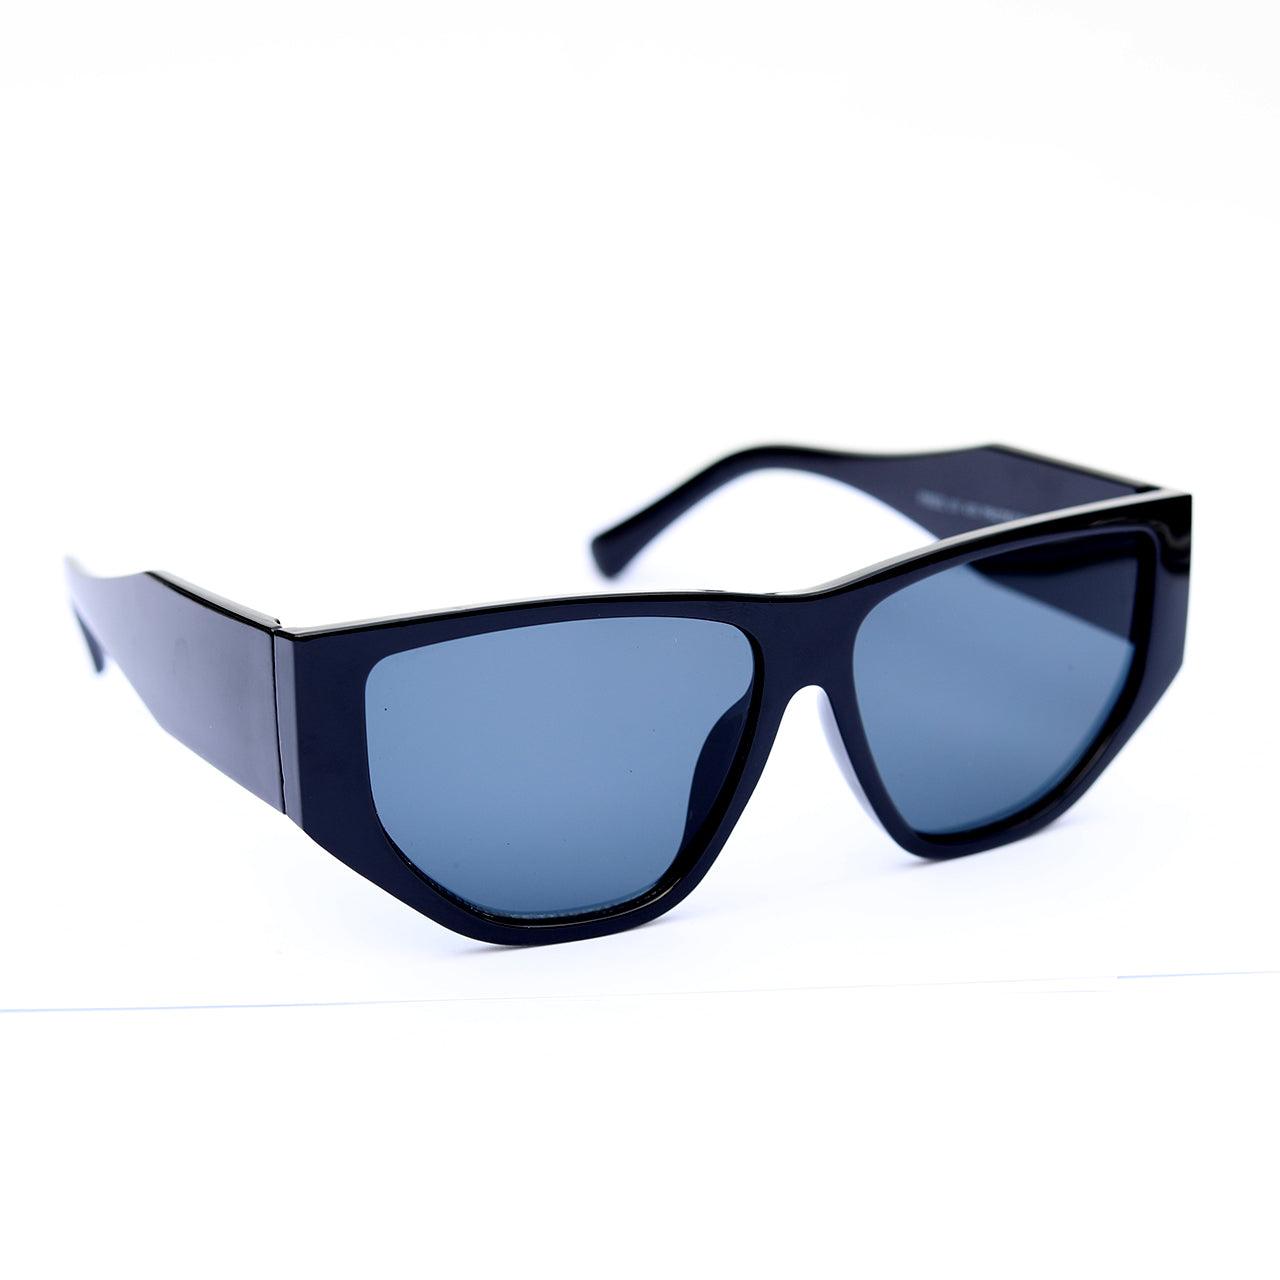 Black Oversized Rimmed Sunglasses